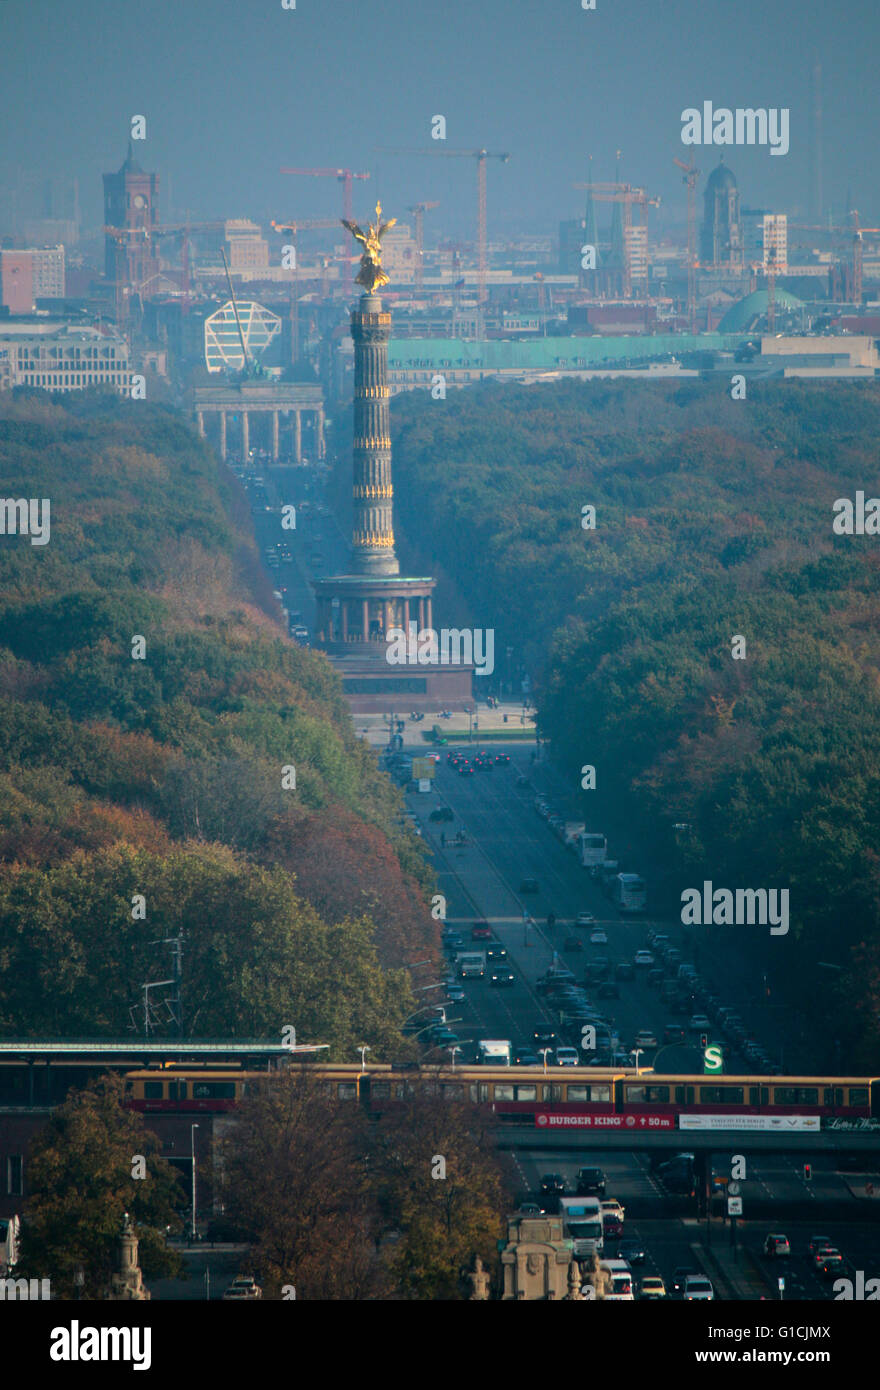 Skyline sie von Berlin mit dem Roten Rathaus, Brandenburger Tor, Siegessaeule und dem Tiergarten, Berlin. Banque D'Images